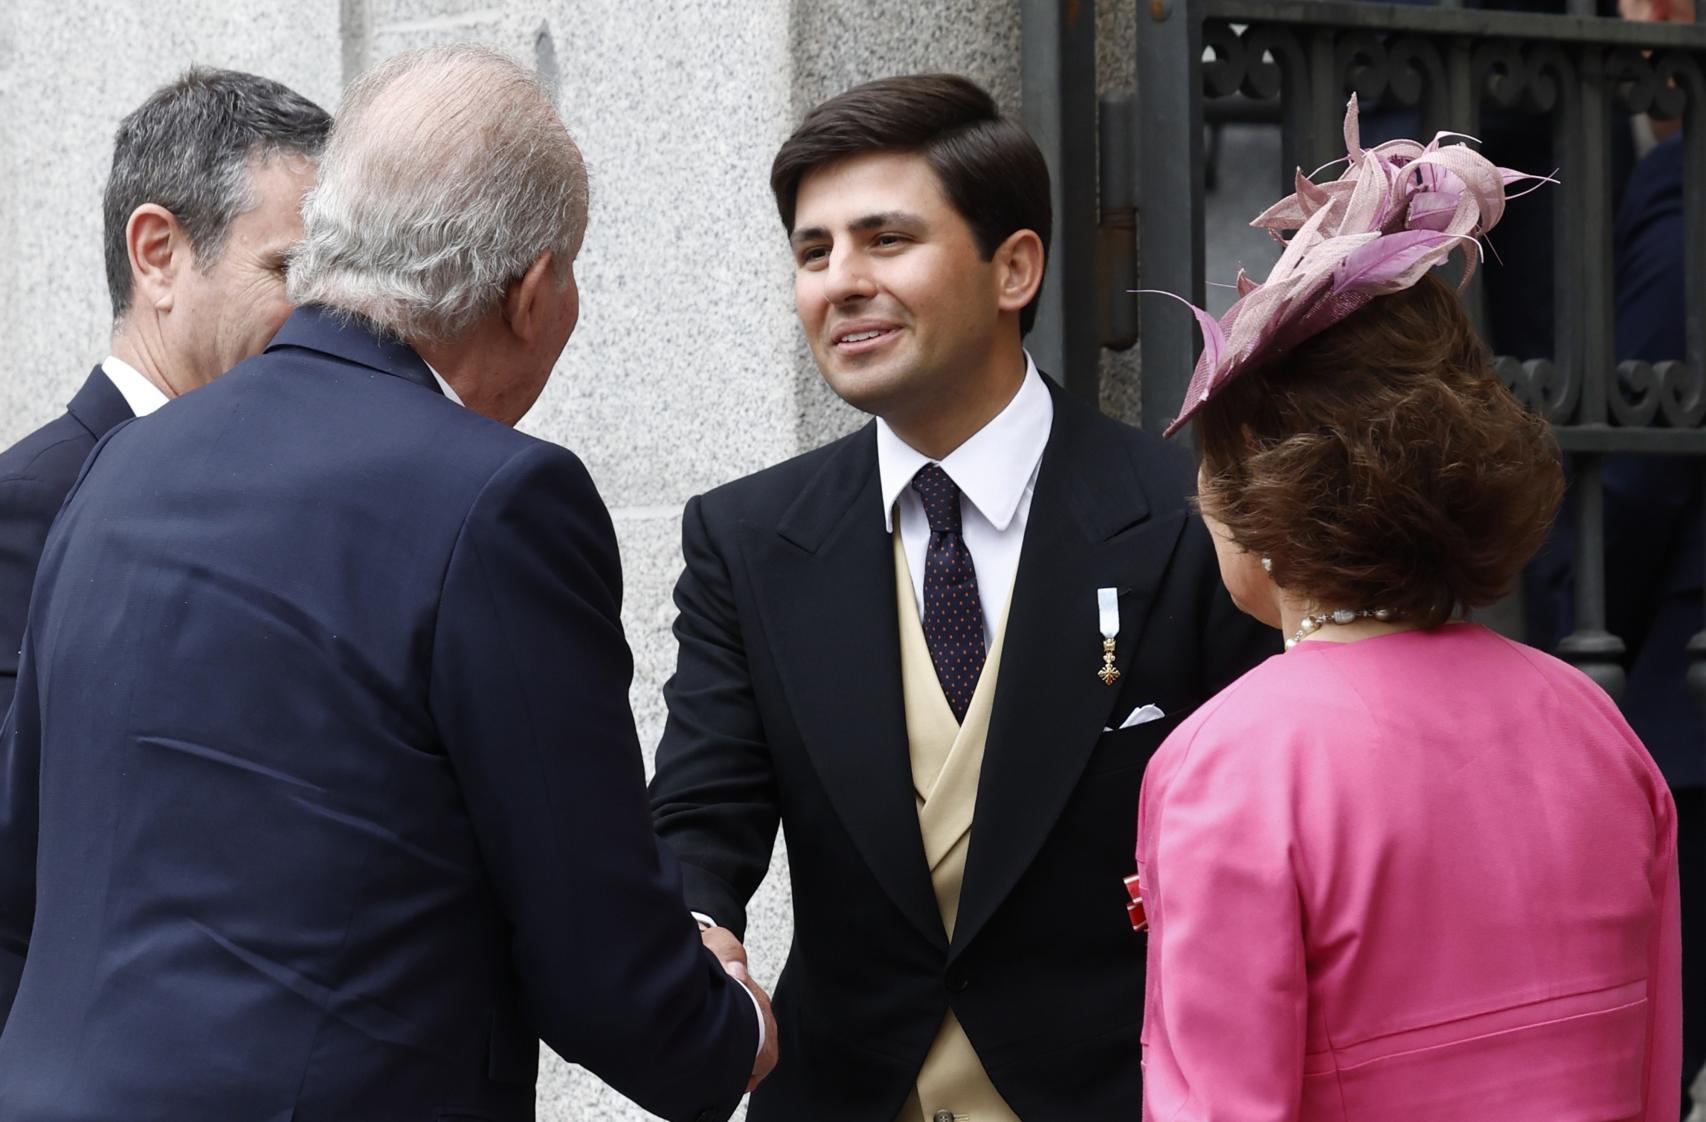 Juan Urquijo saludando al rey Juan Carlos, abuelo de su novia Irene, en la boda de su hermana Teresa Urquijo con José Luis Martínez Almeida.